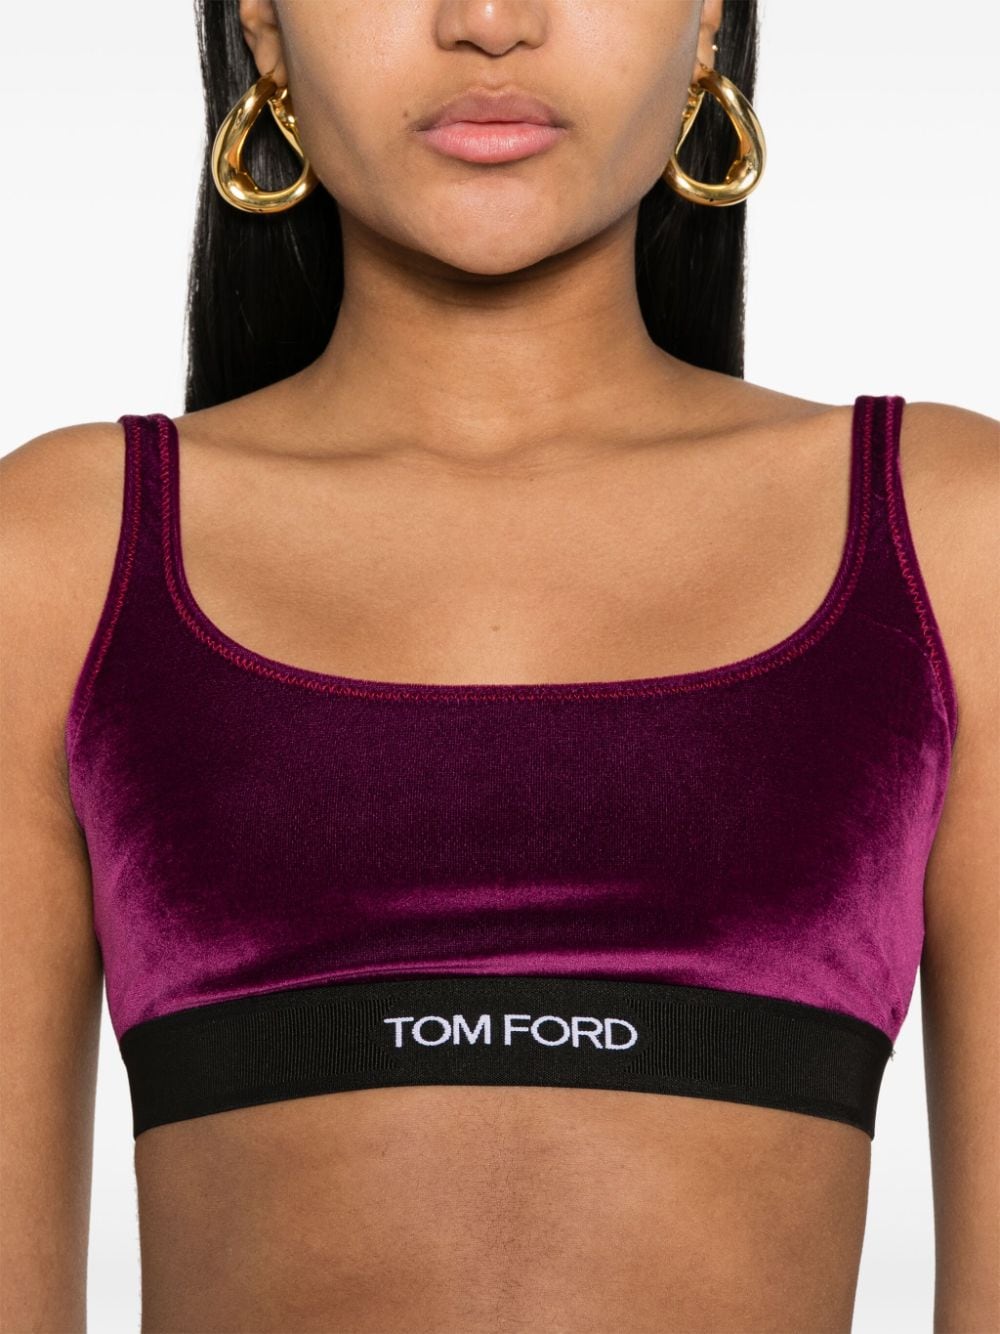 Tom Ford Underwear Purple